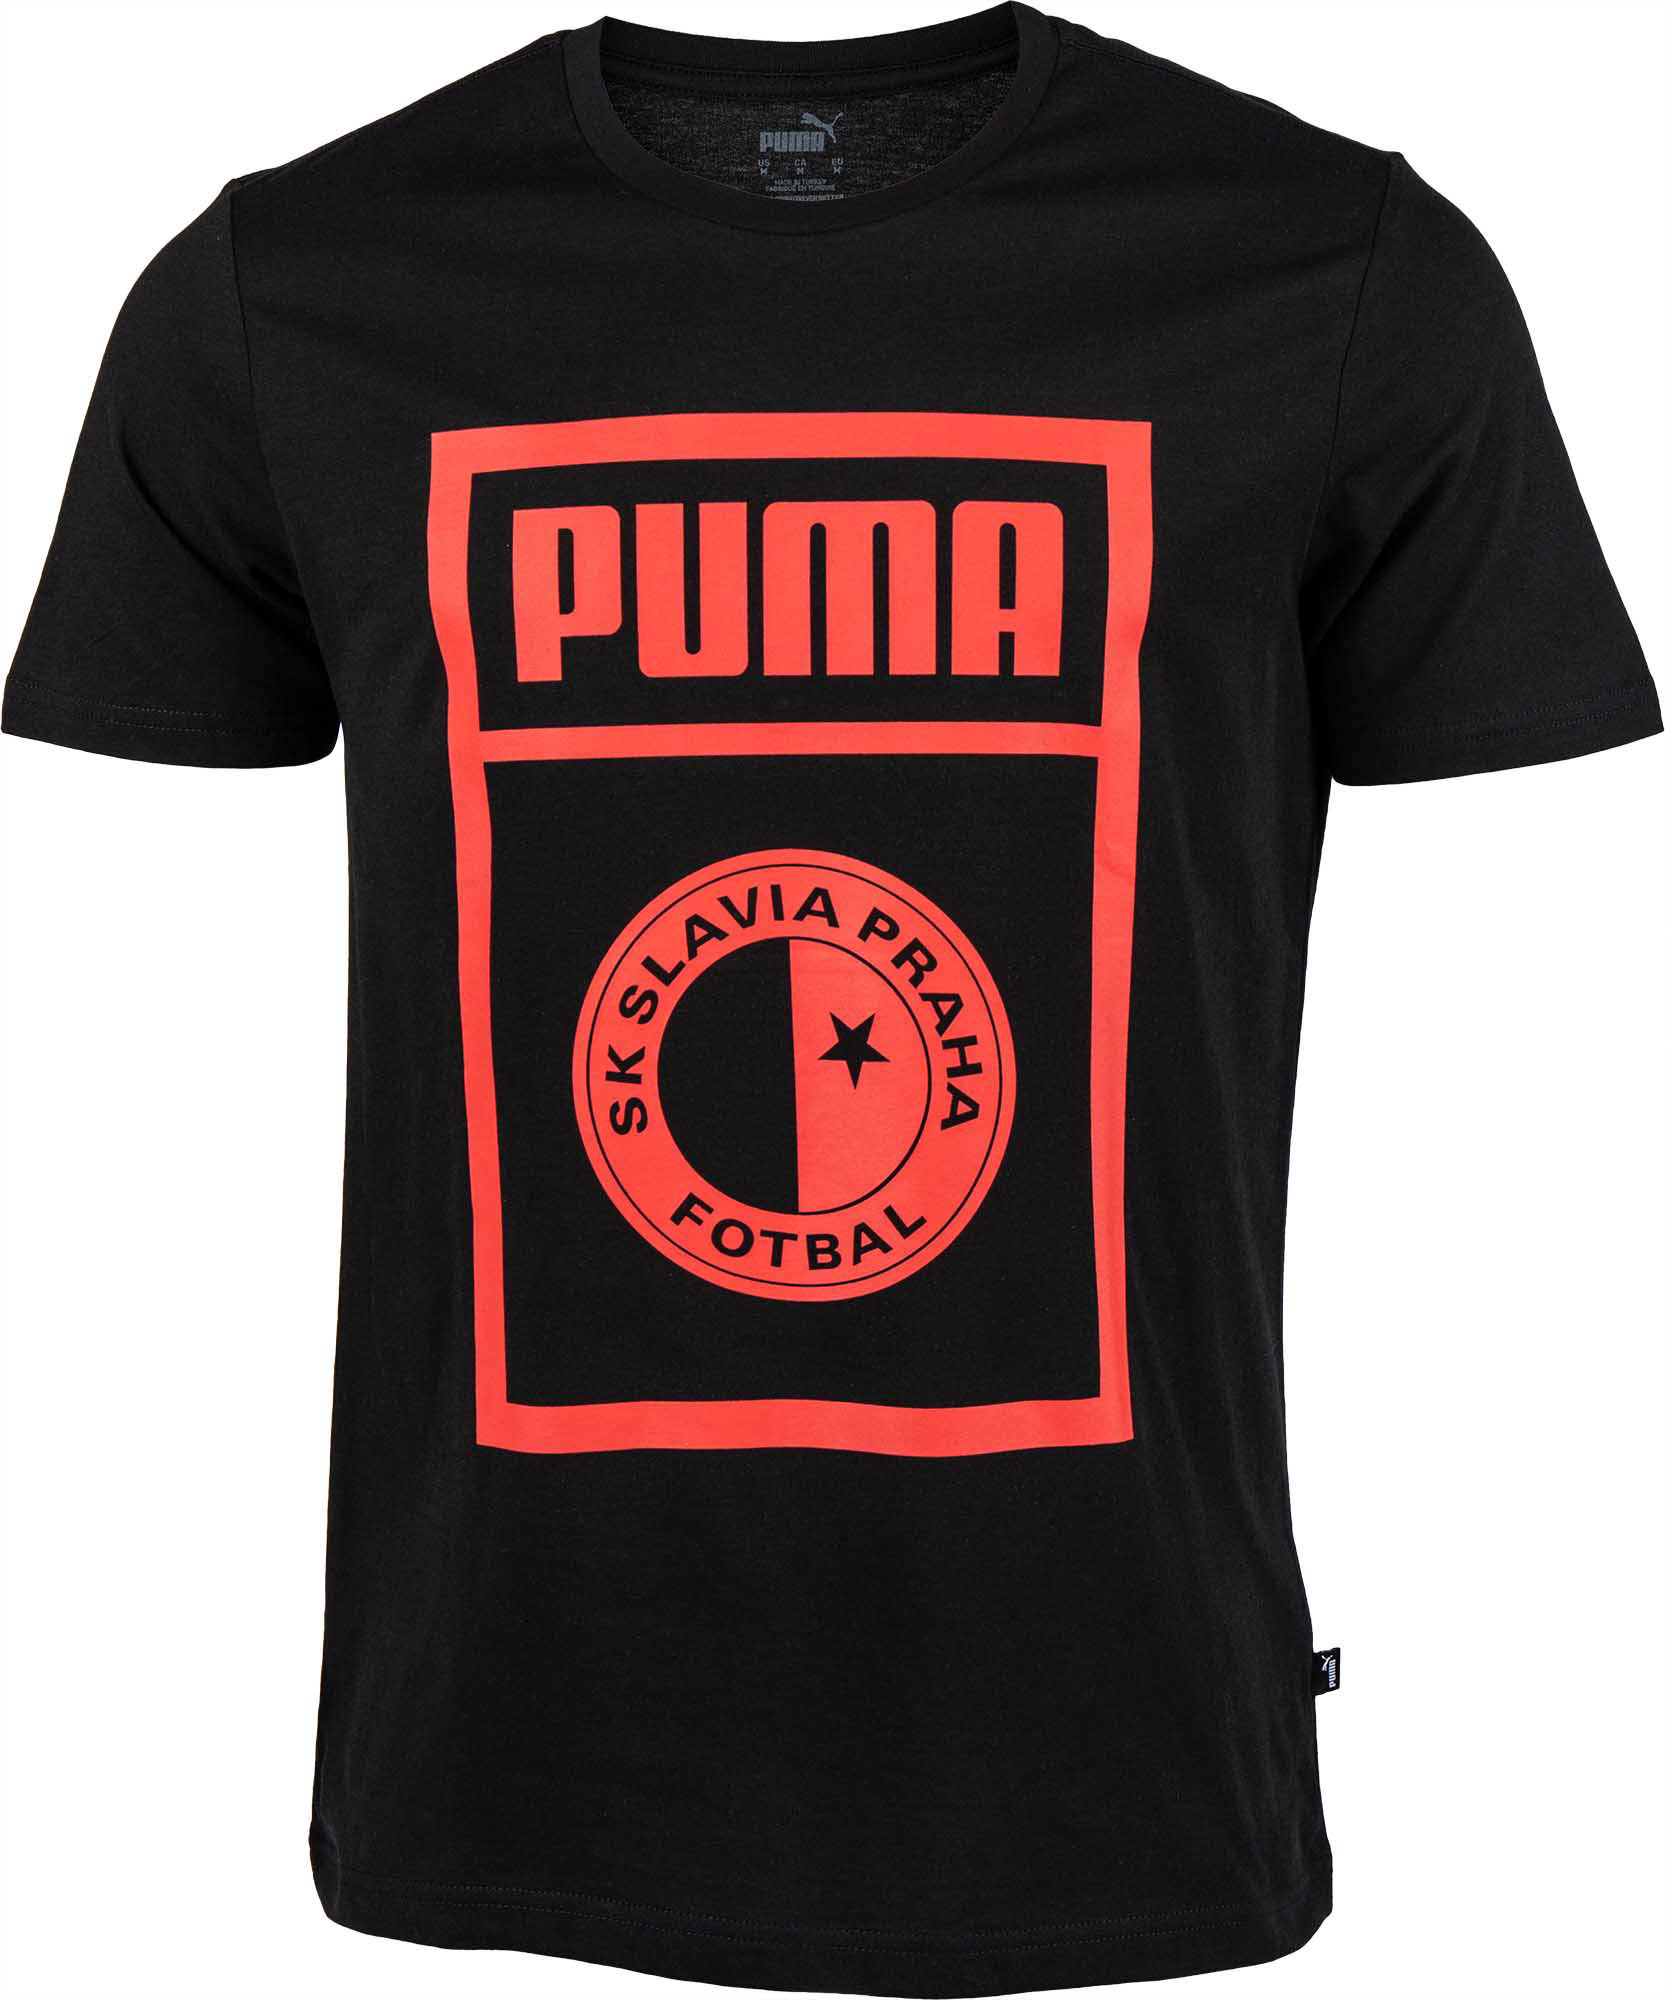 Pánské triko Puma SLAVIA PRAGUE GRAPHIC TEE|M